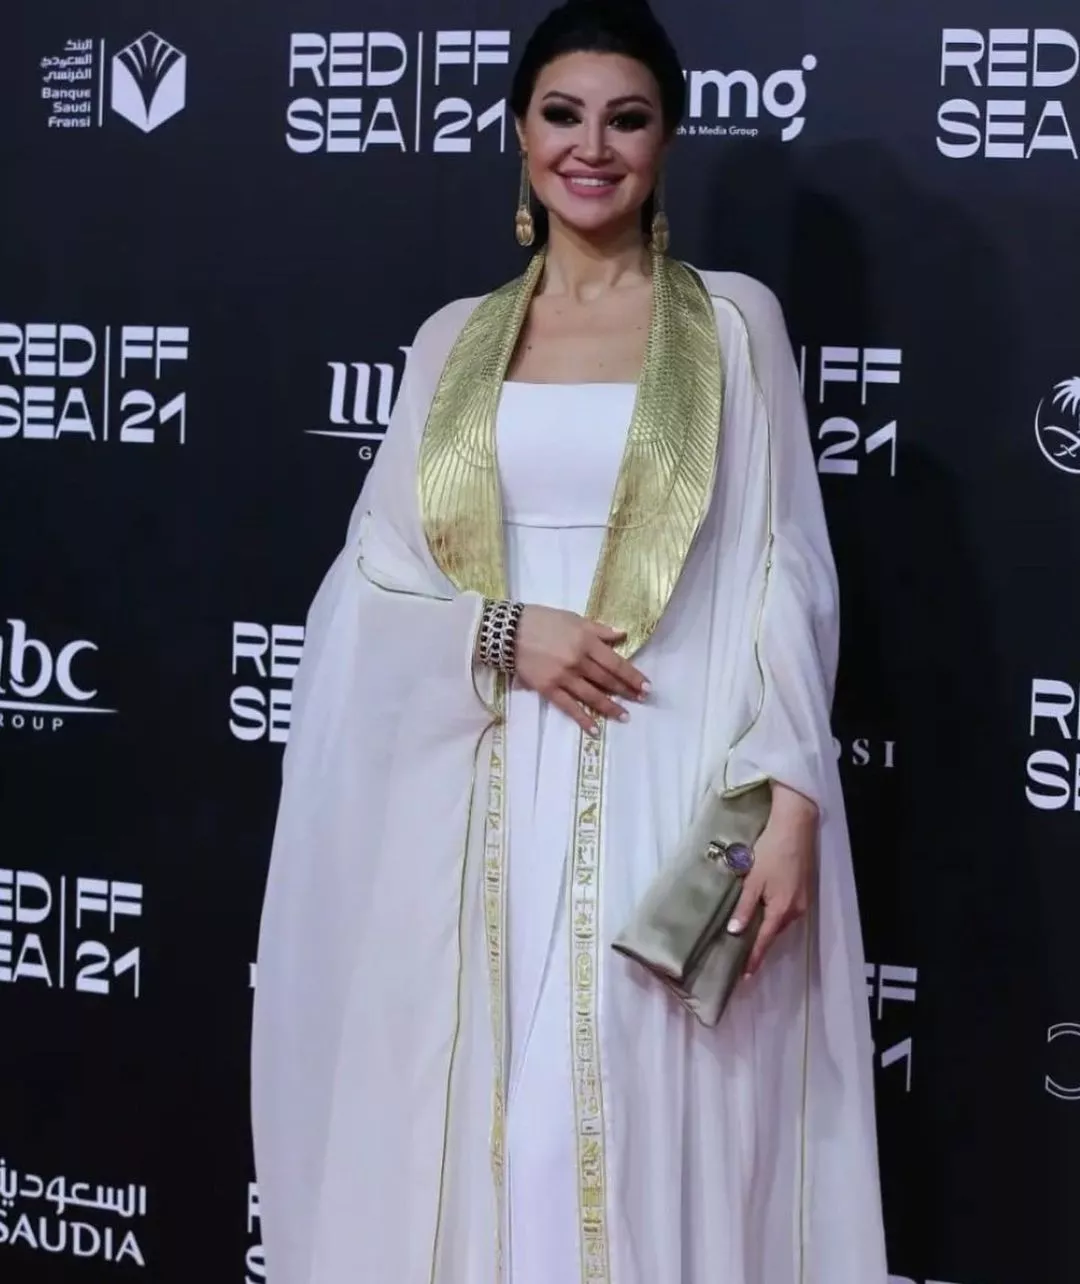 أبرز إطلالات النجمات خلال حفل ختام مهرجان البحر الأحمر السينمائي الدولي 2021 في السعودية